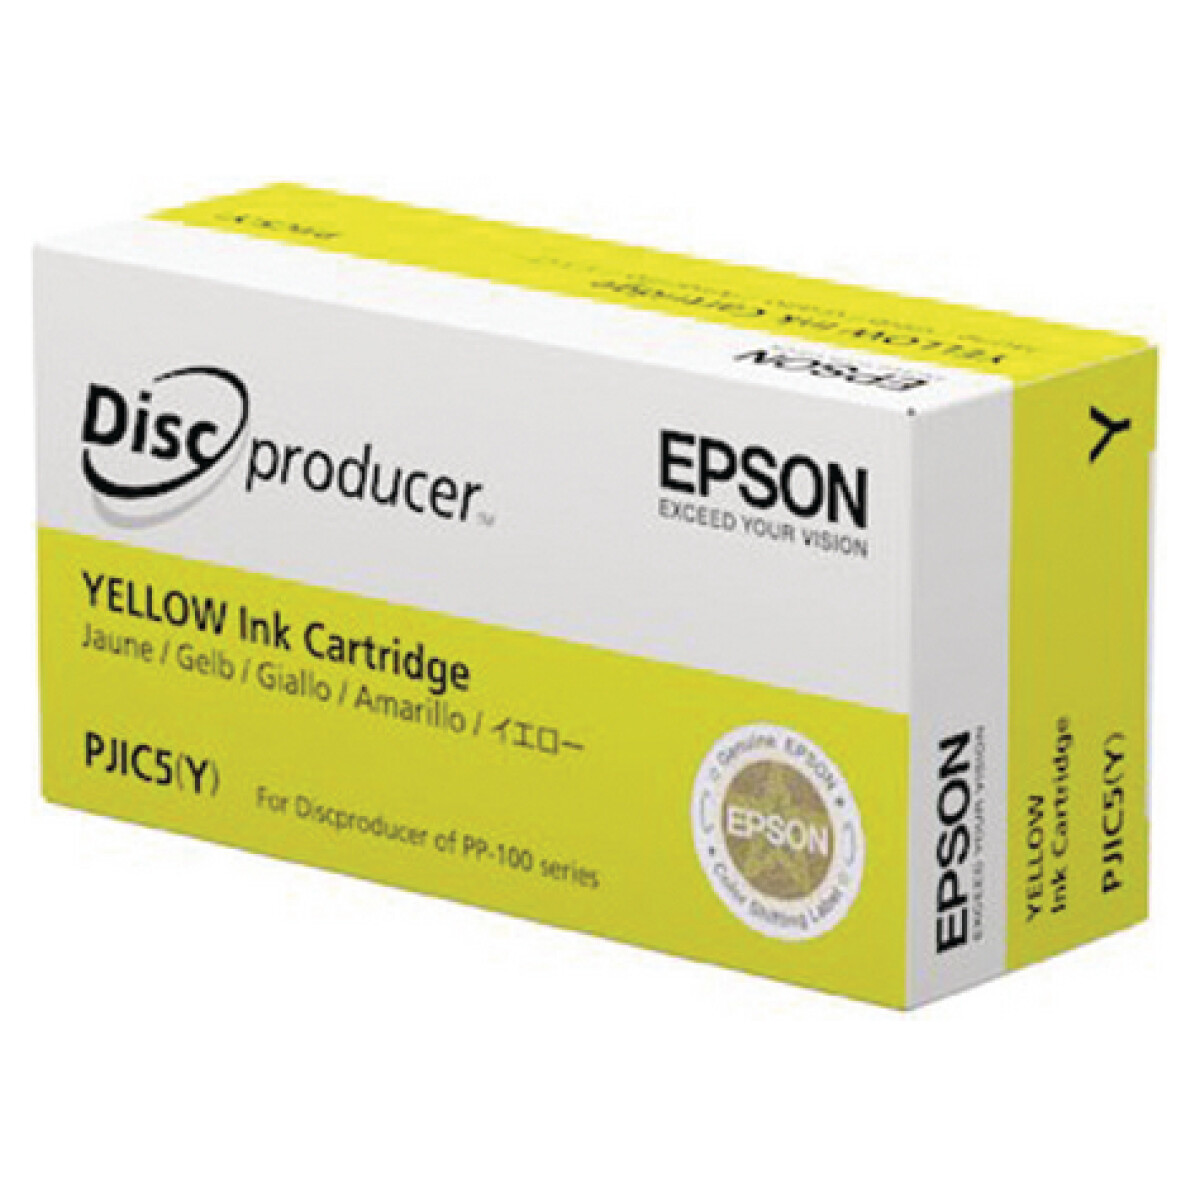 Epson - Printcartridge Discproducer PP100C- PJIC5(Y) (Geel)